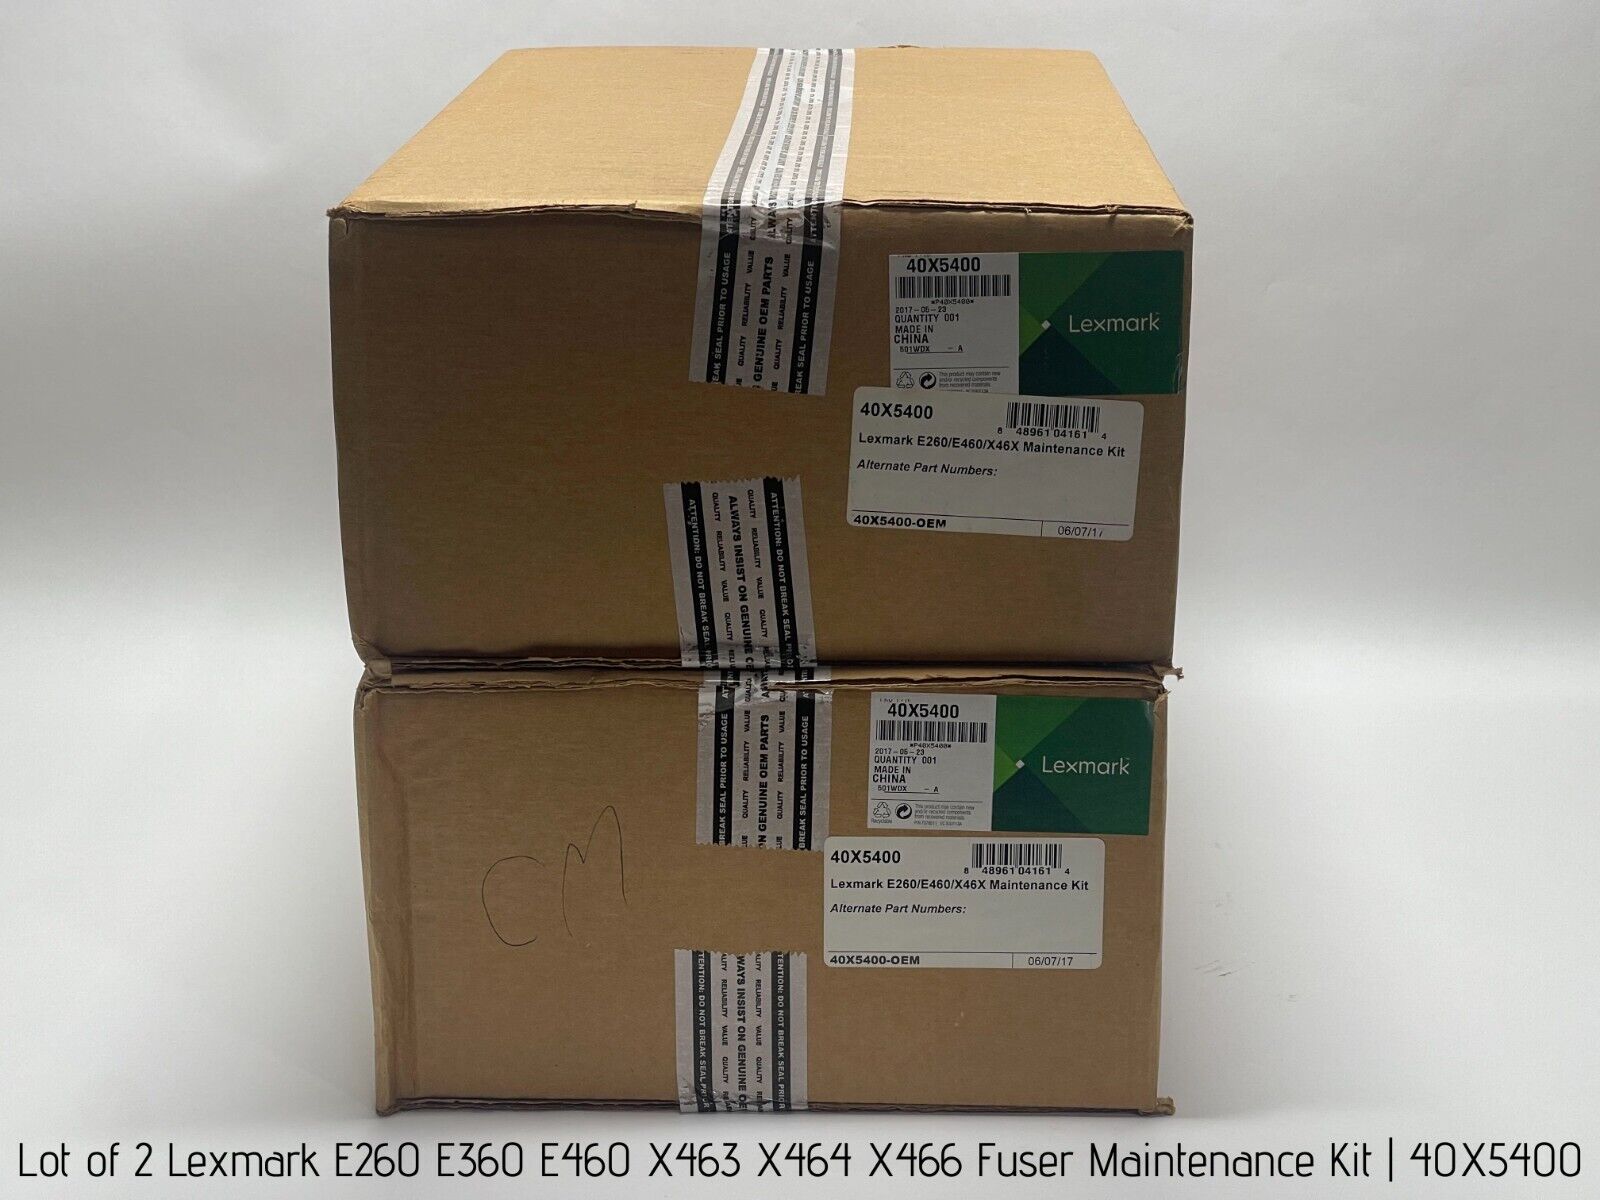 Lot of 2 Lexmark E260 E360 E460 X463 X464 X466 Fuser Maintenance Kit, 40X5400